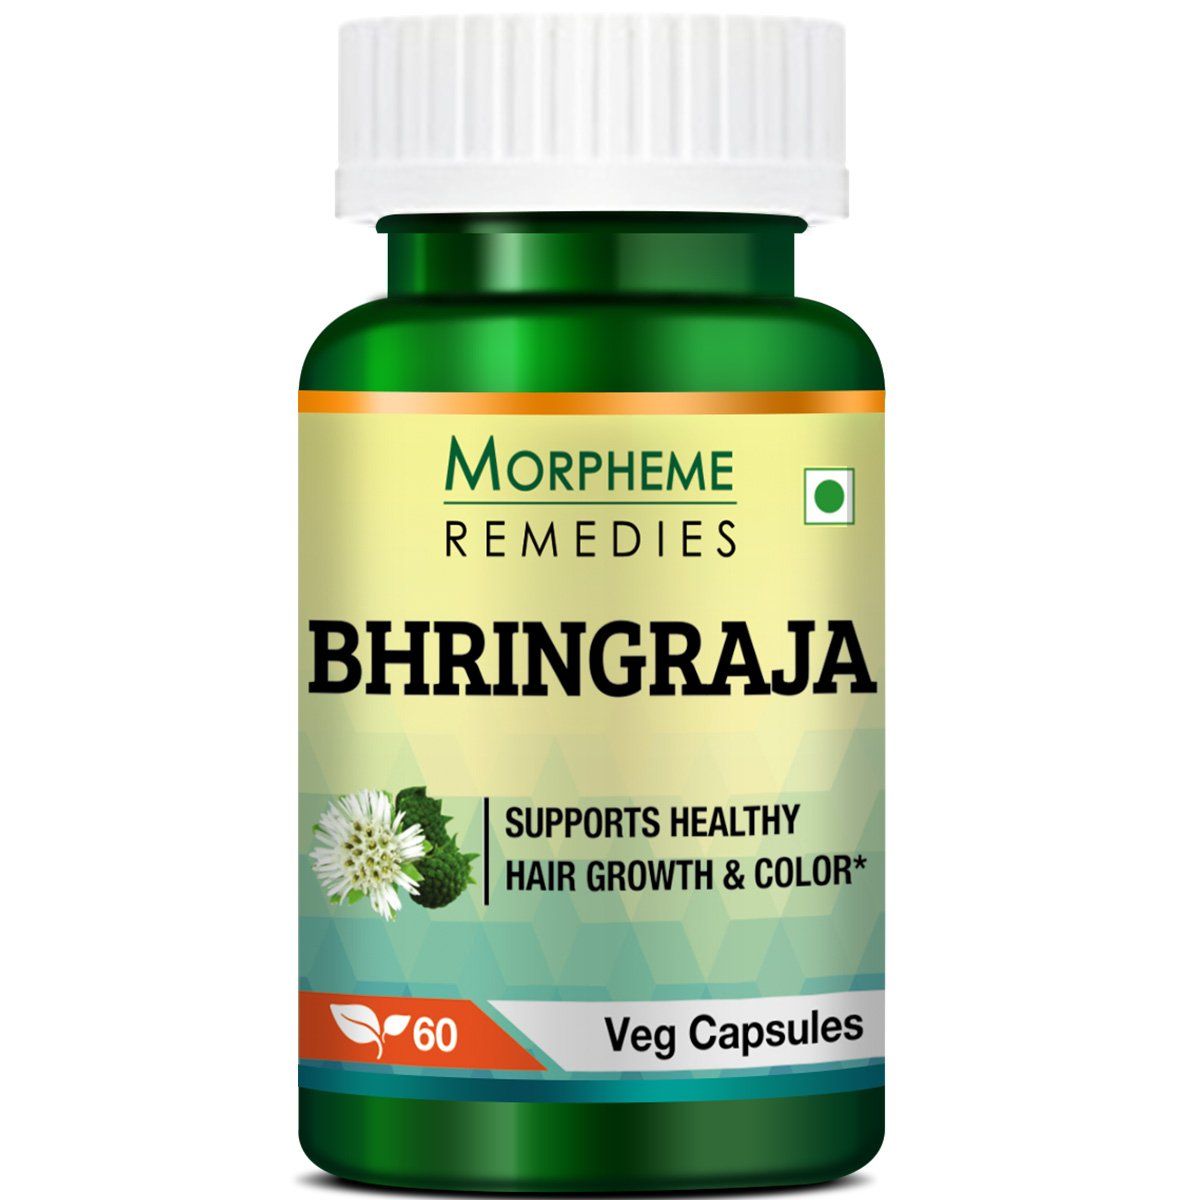 Morpheme Remedies Bhringraja Image